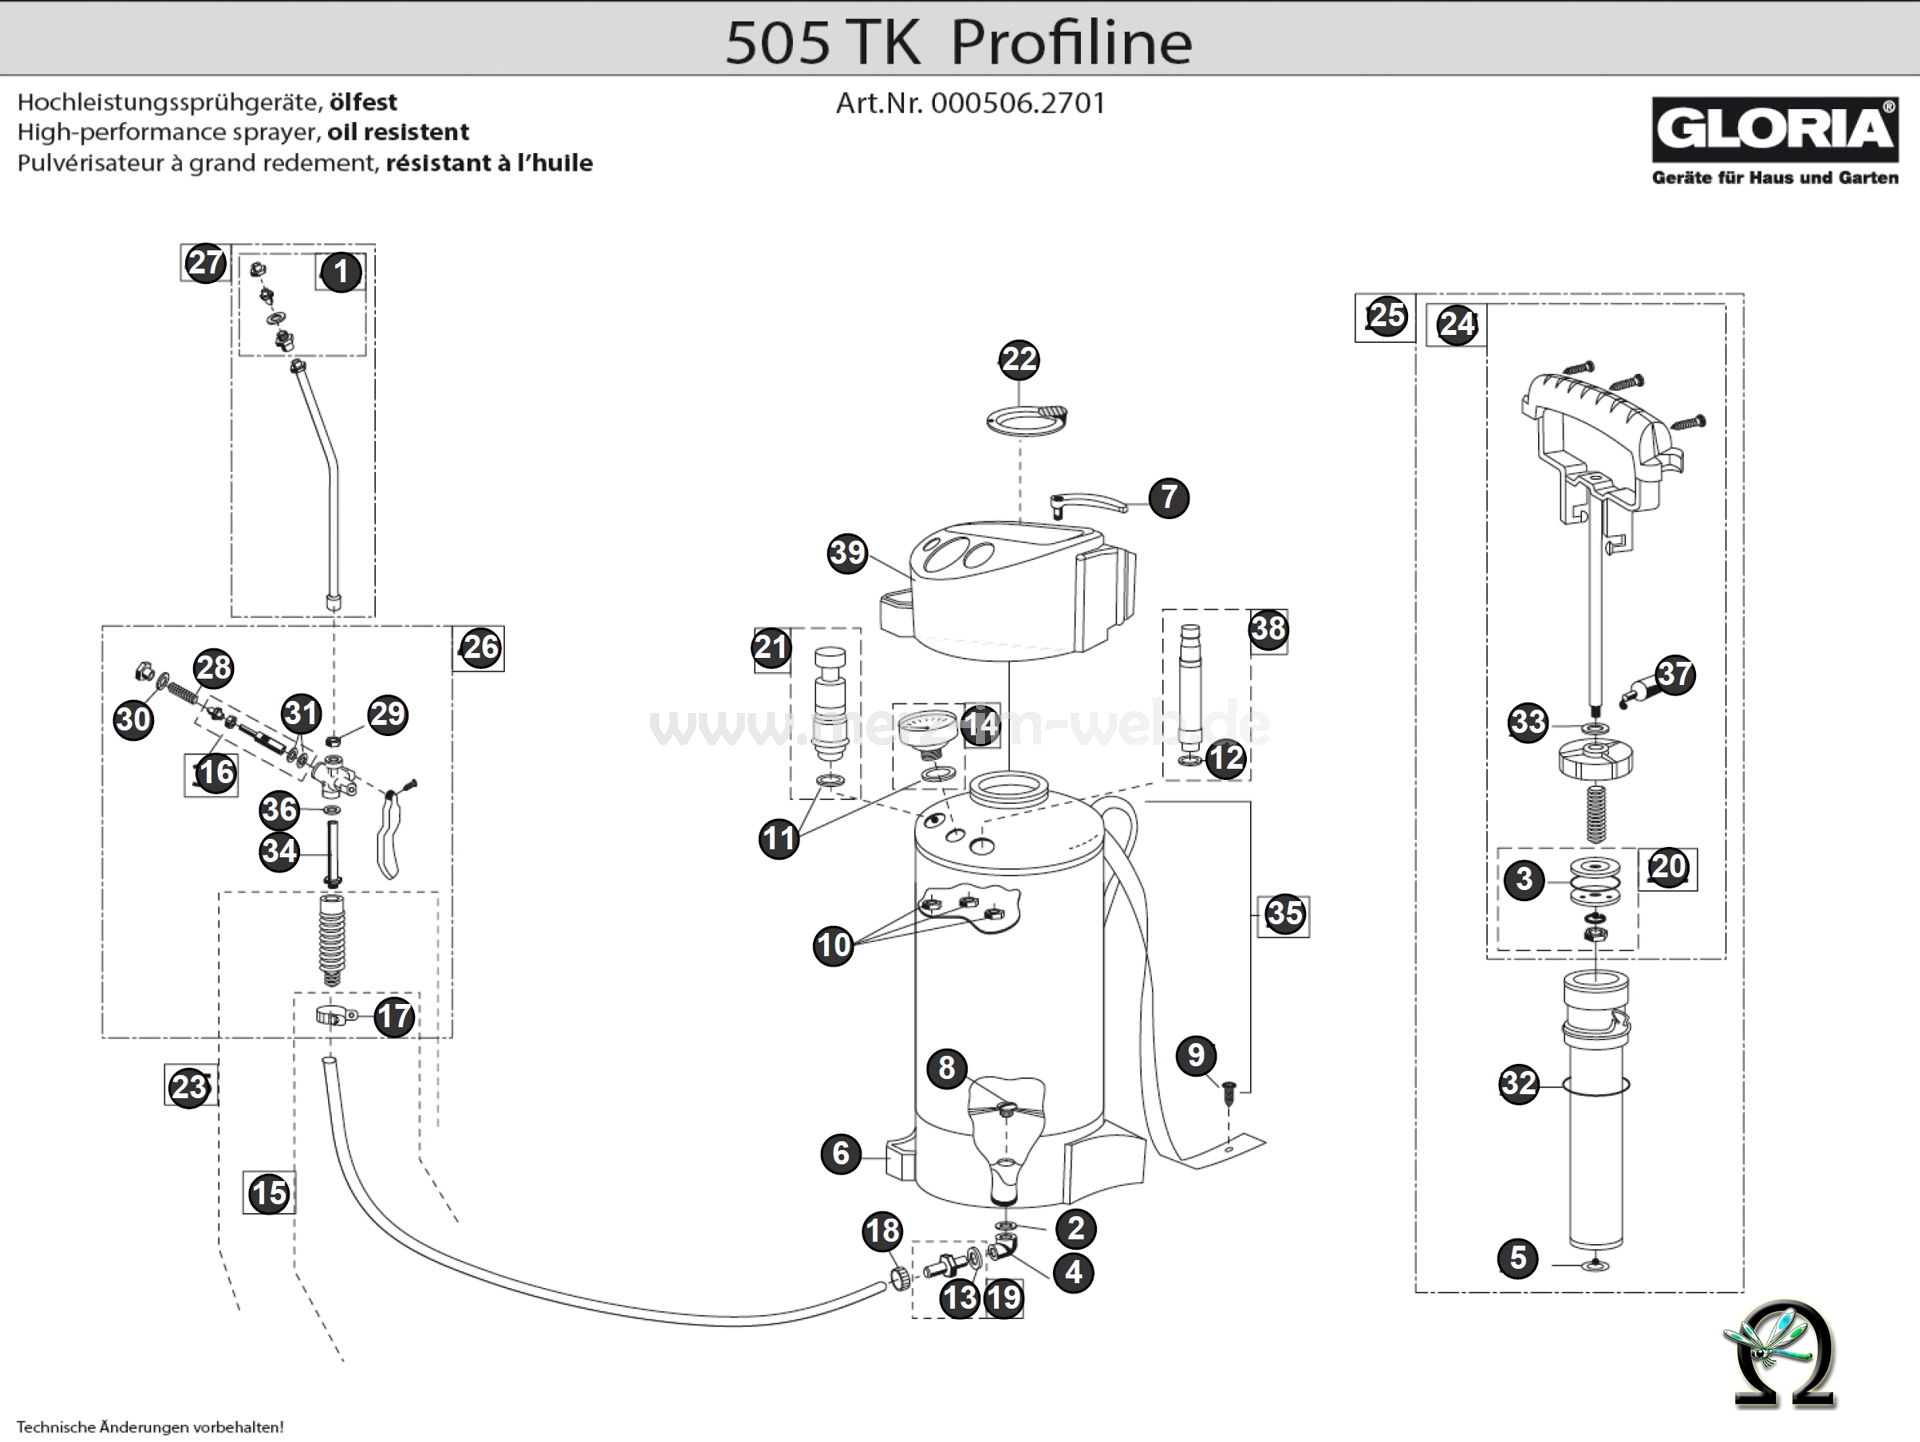 Gloria Hochleistungssprühgerät 505 TK Profiline Zeichnung der Einzelteile